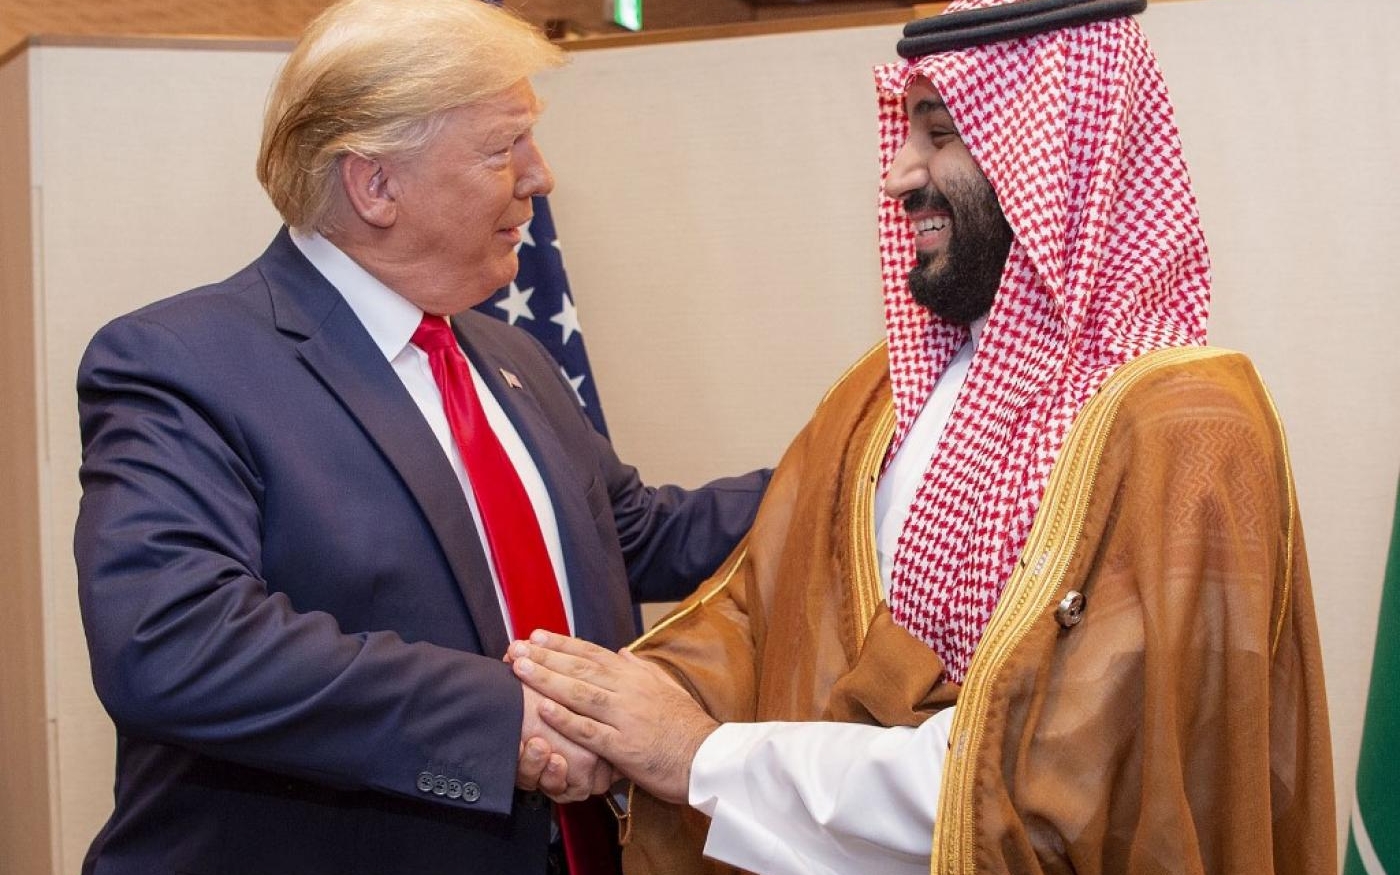 Poignée de main entre le président américain Donald Trump et MBS à l’occasion du sommet du G20 de 2019 organisé à Osaka, Japon (Bandar al-Jaloud/palais royal d’Arabie saoudite/AFP)